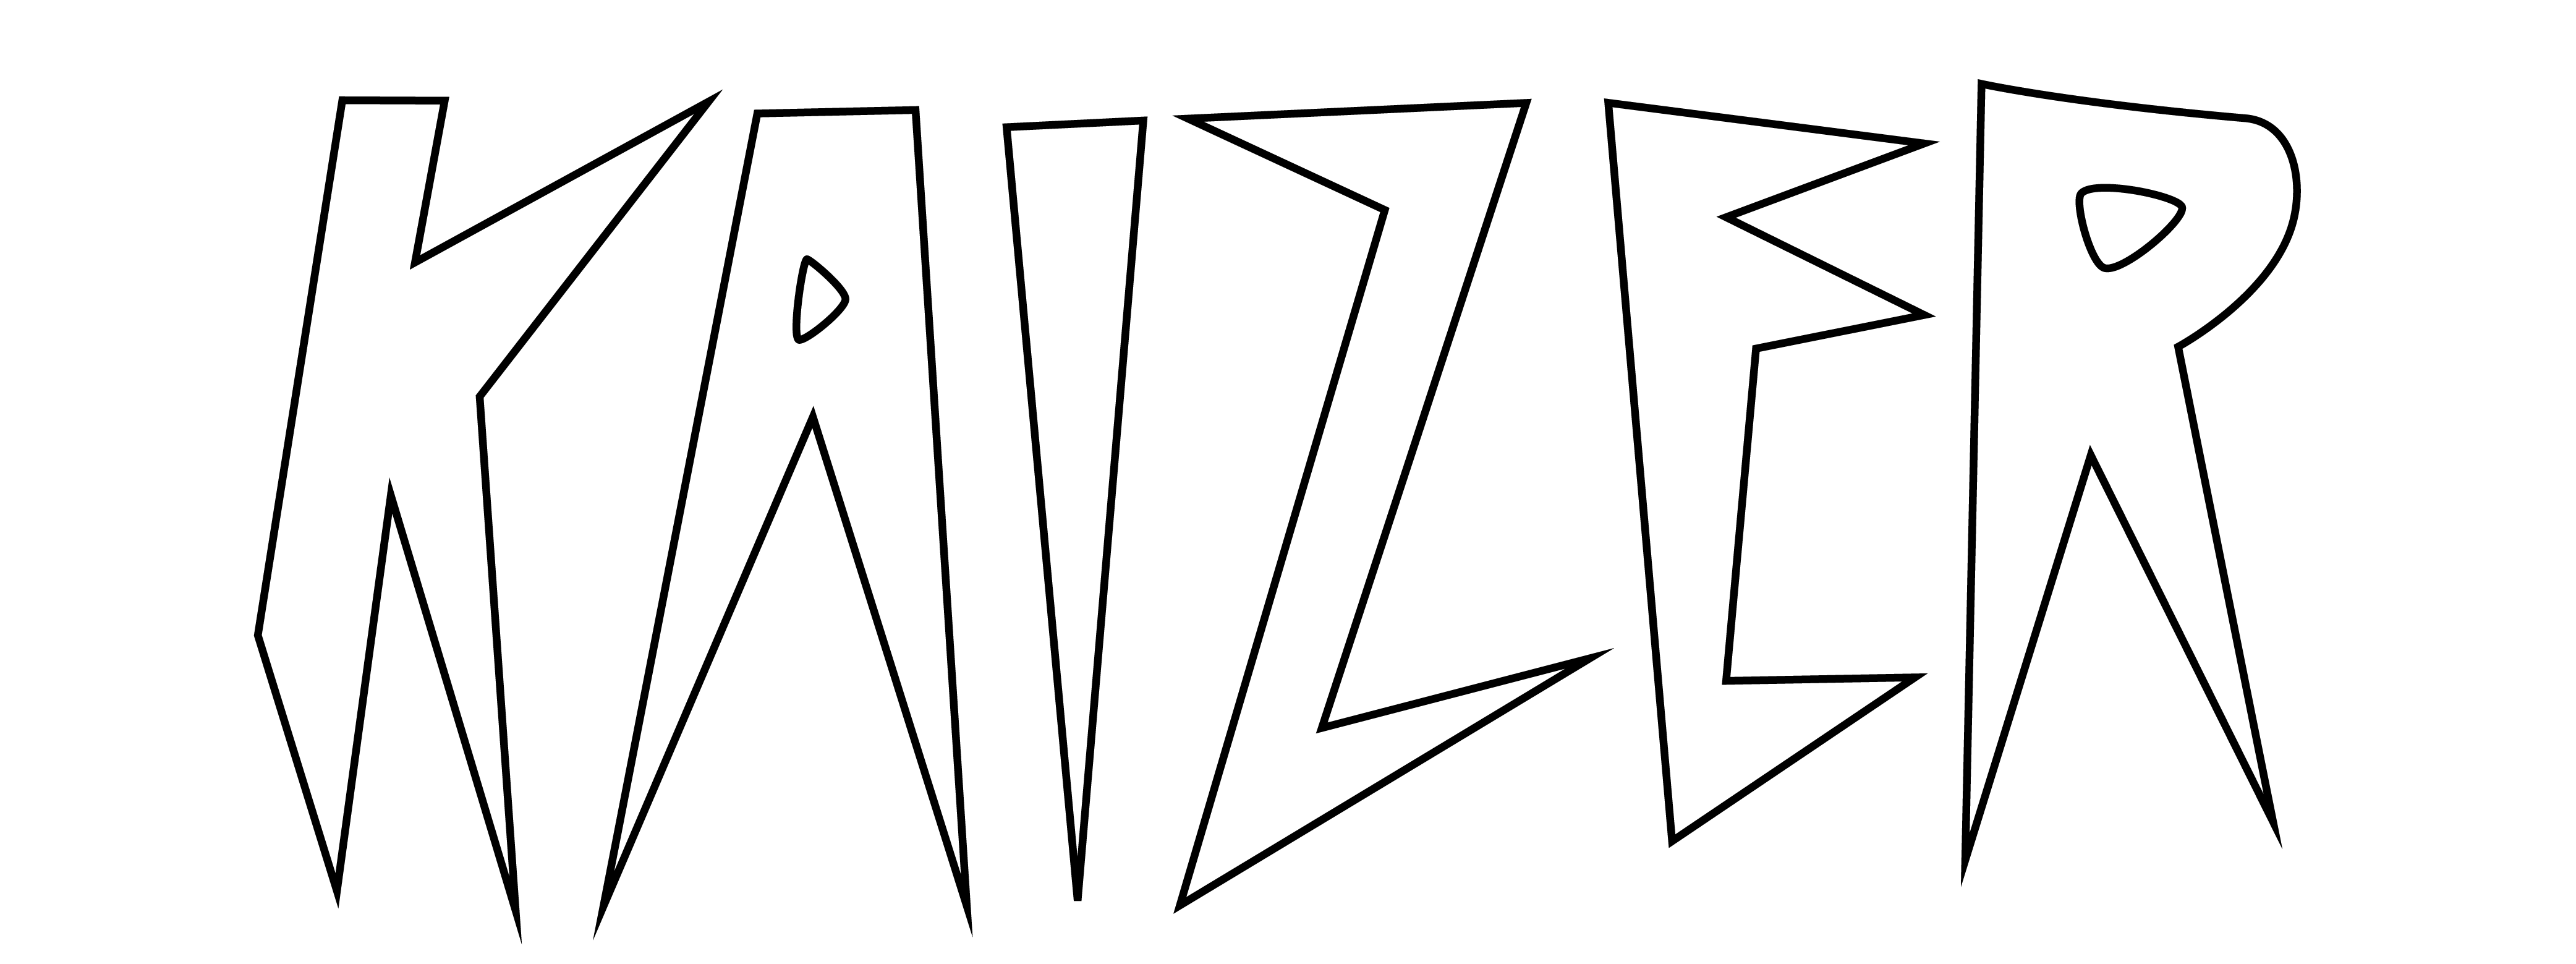 kaizer logo